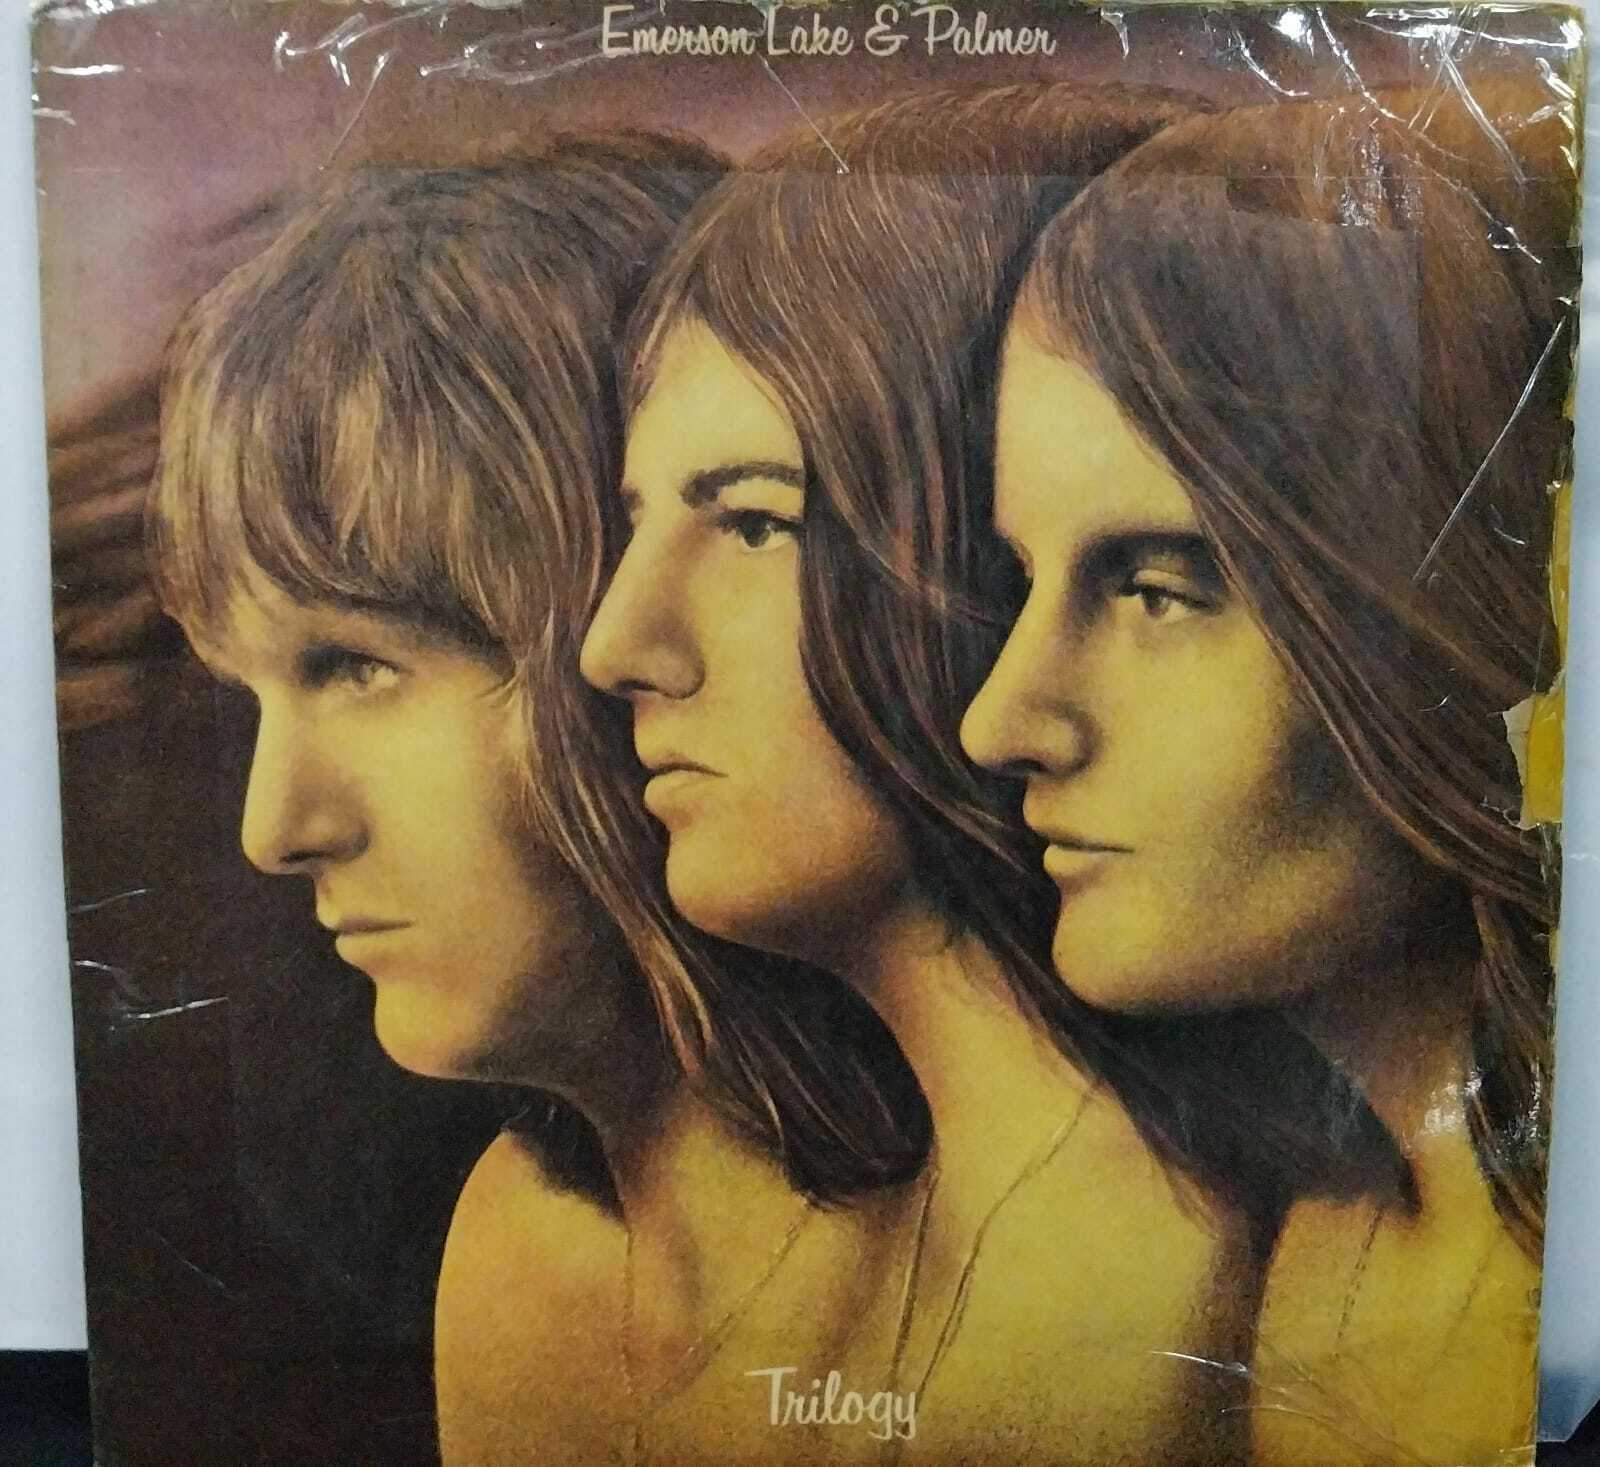 Vinil - Emerson Lake and Palmer - Trilogy